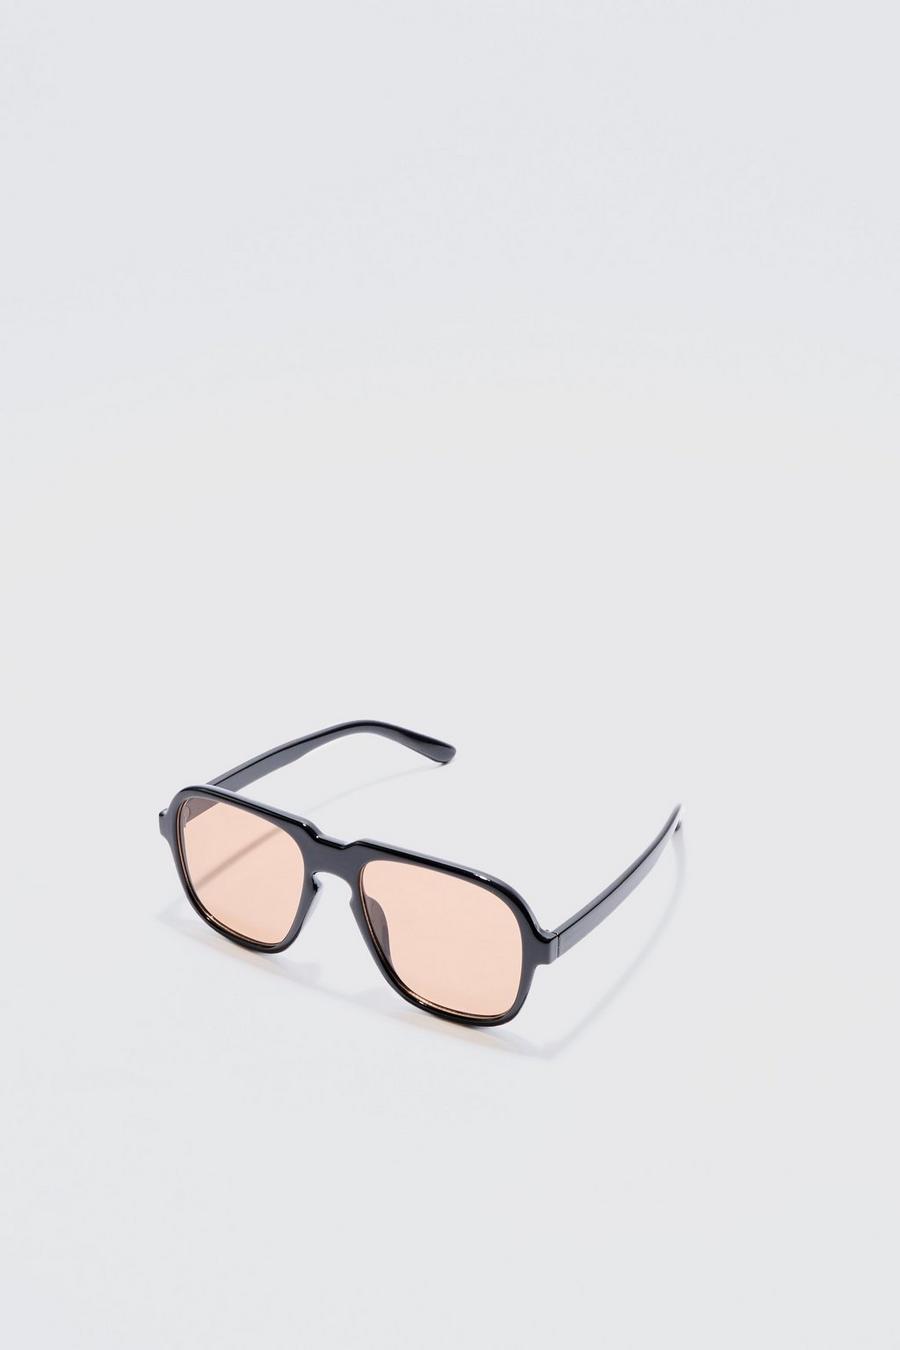 Gafas de sol estilo retro con lentes marrones, Black